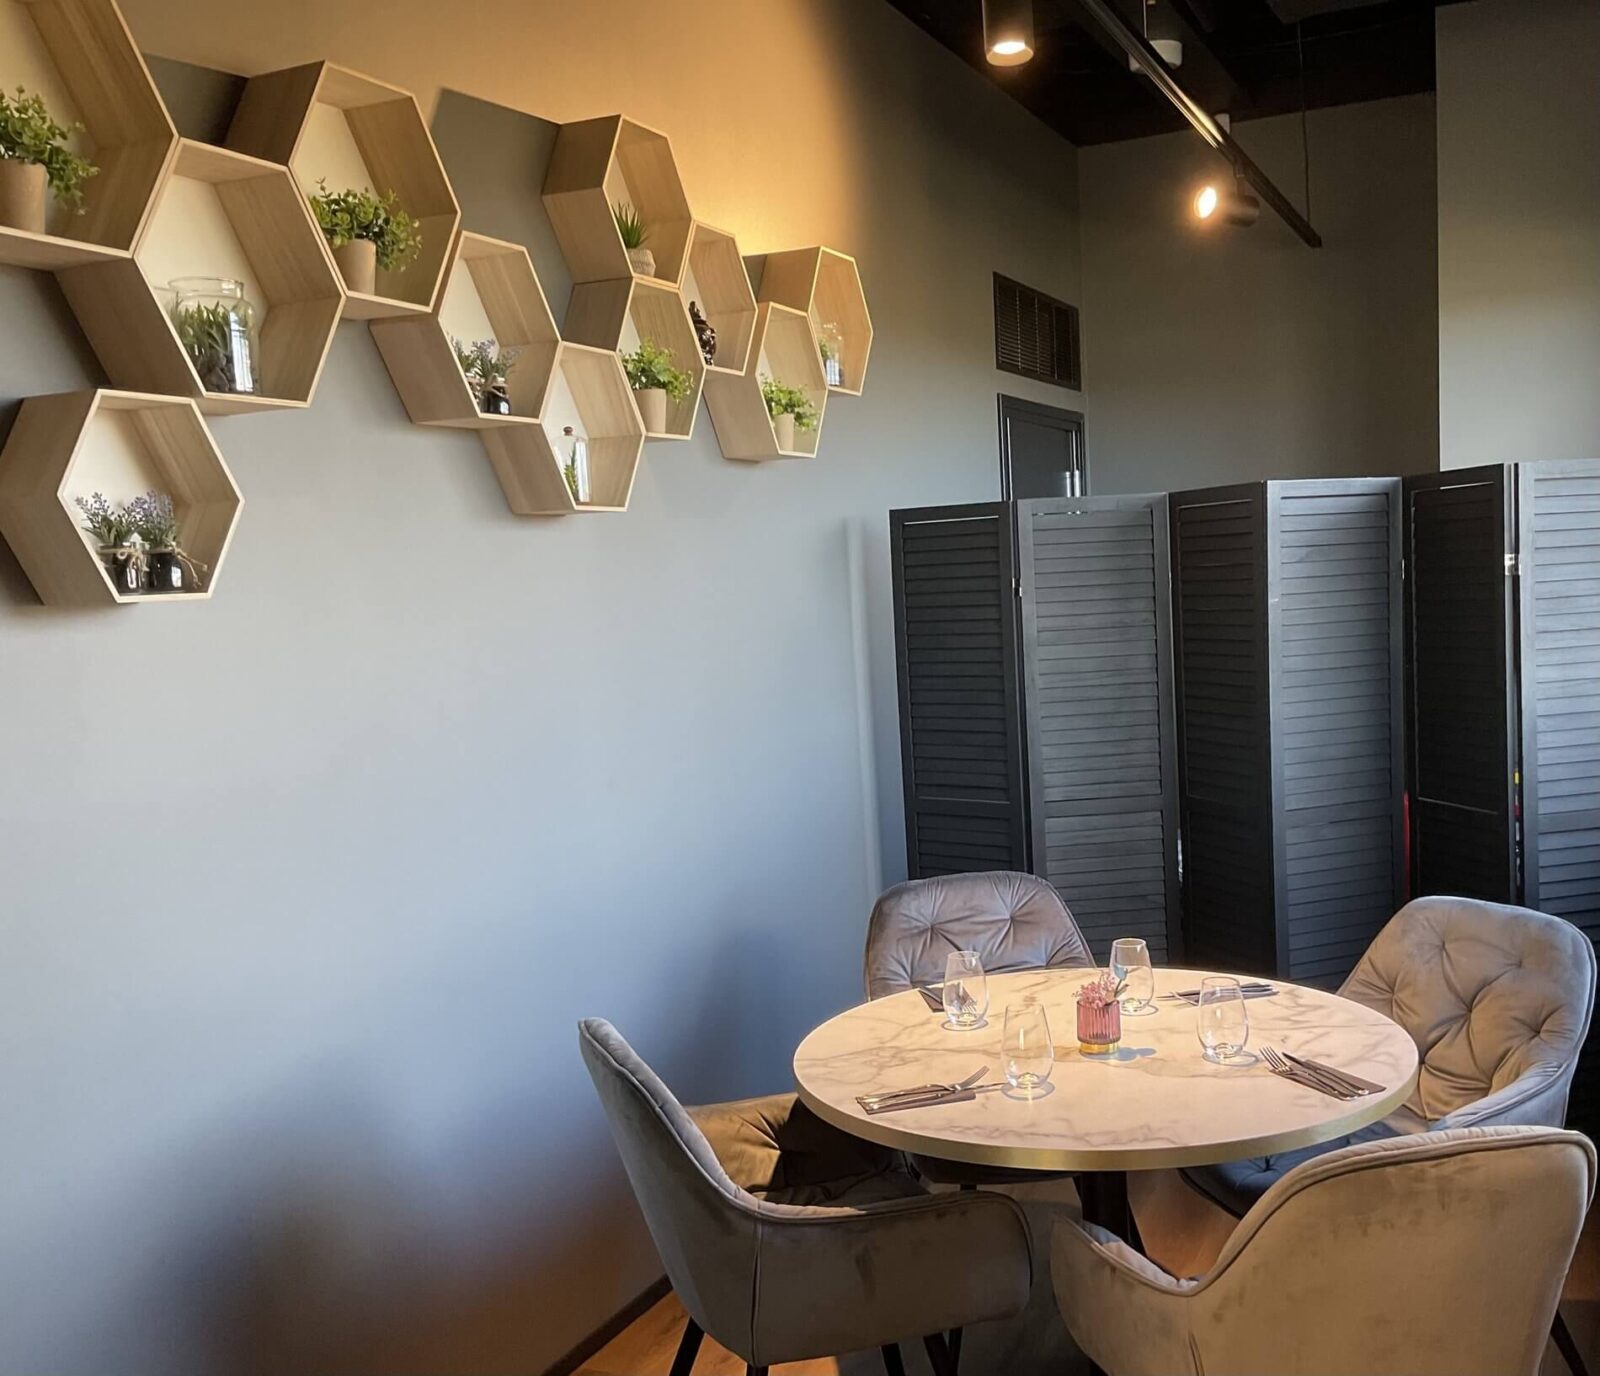 Стол в дизайне интерьера ресторана фьюжн-кухни в Таллинне